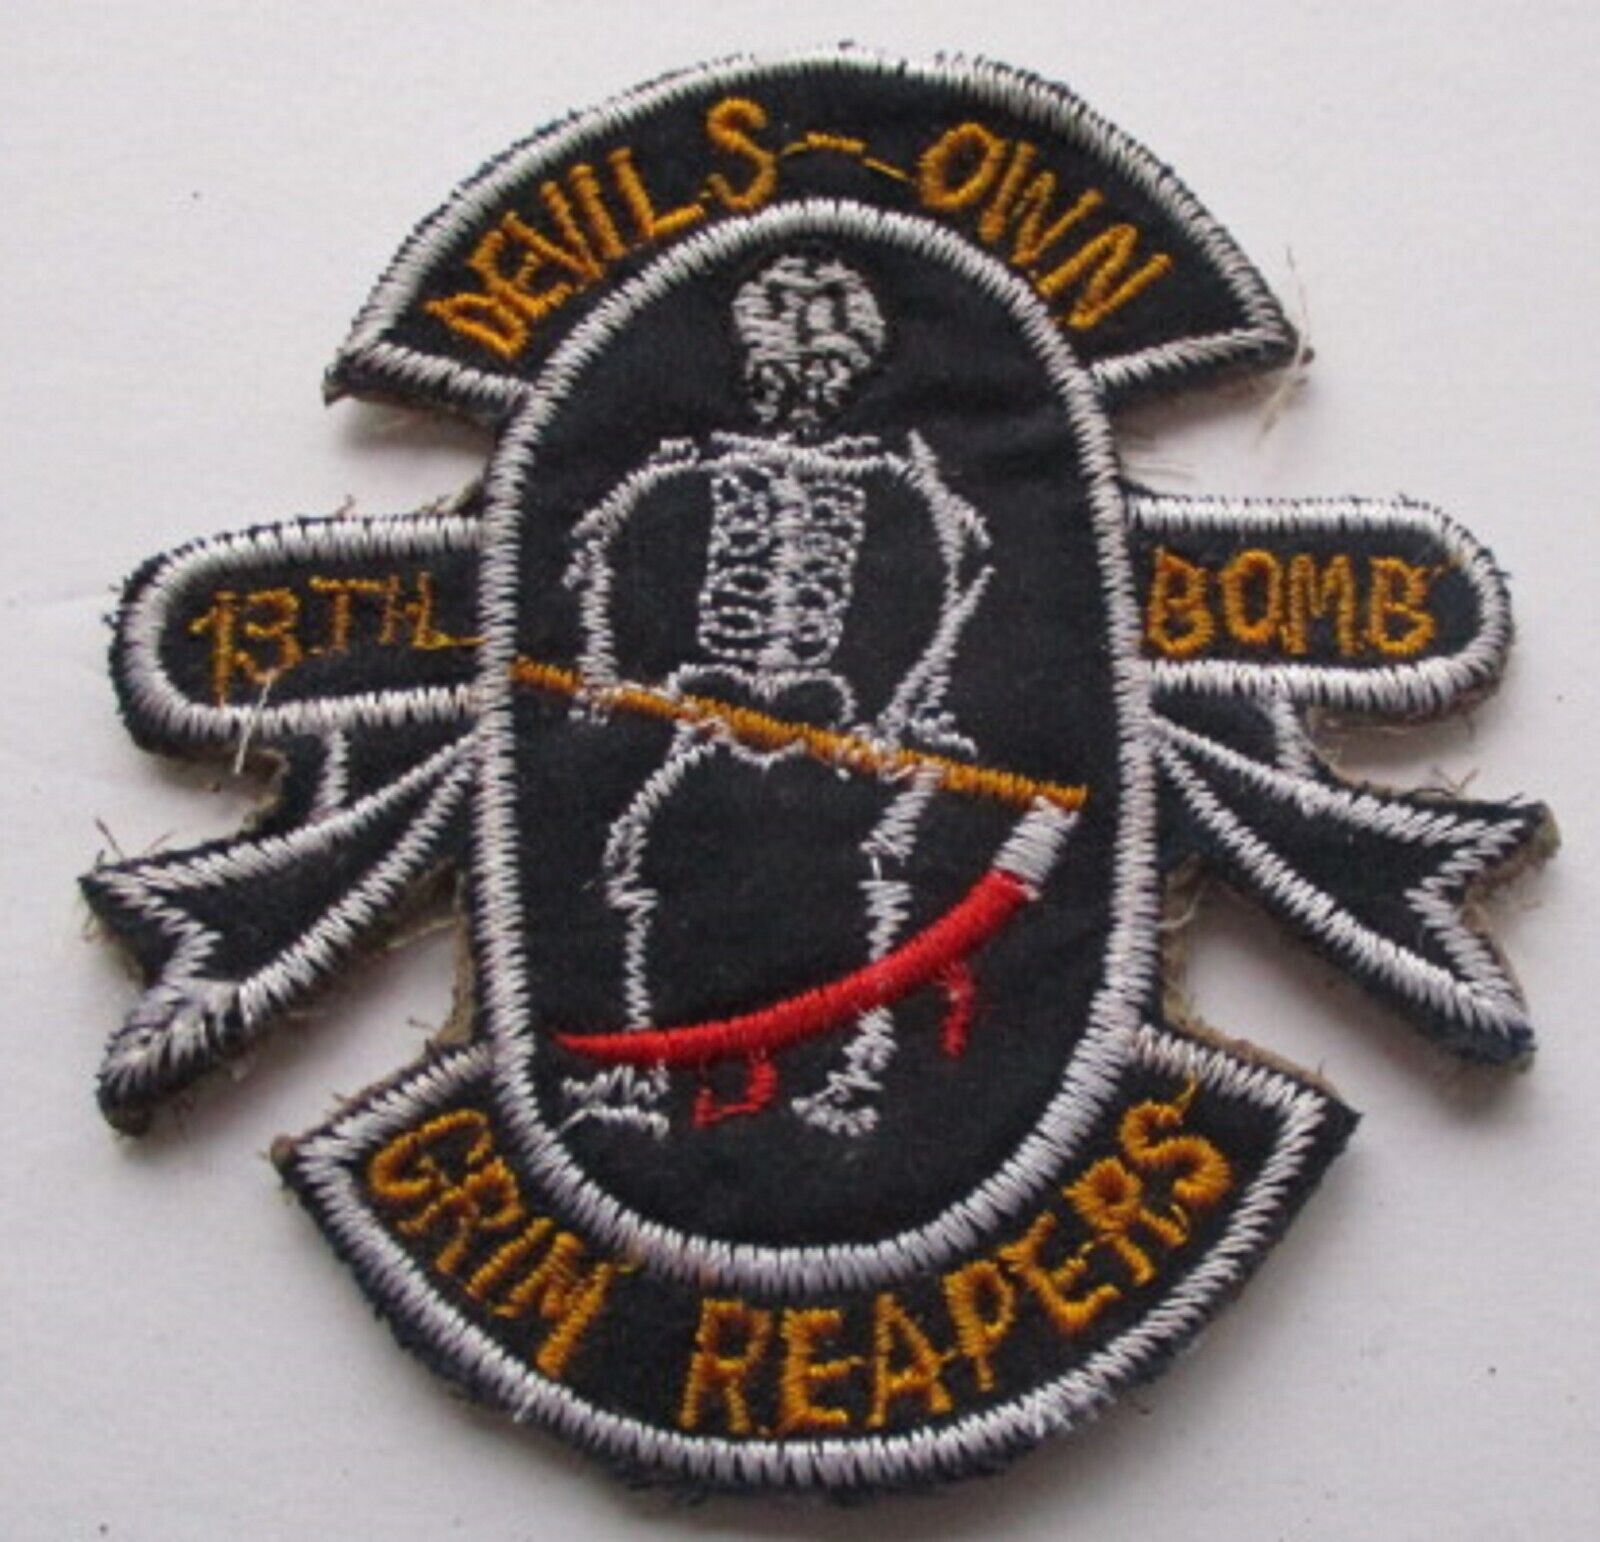 GRIM REAPERS DEVILS OWN 13th BOMB SQUADRON ORIGINAL VIETNAM WAR PATCH {VAR A}